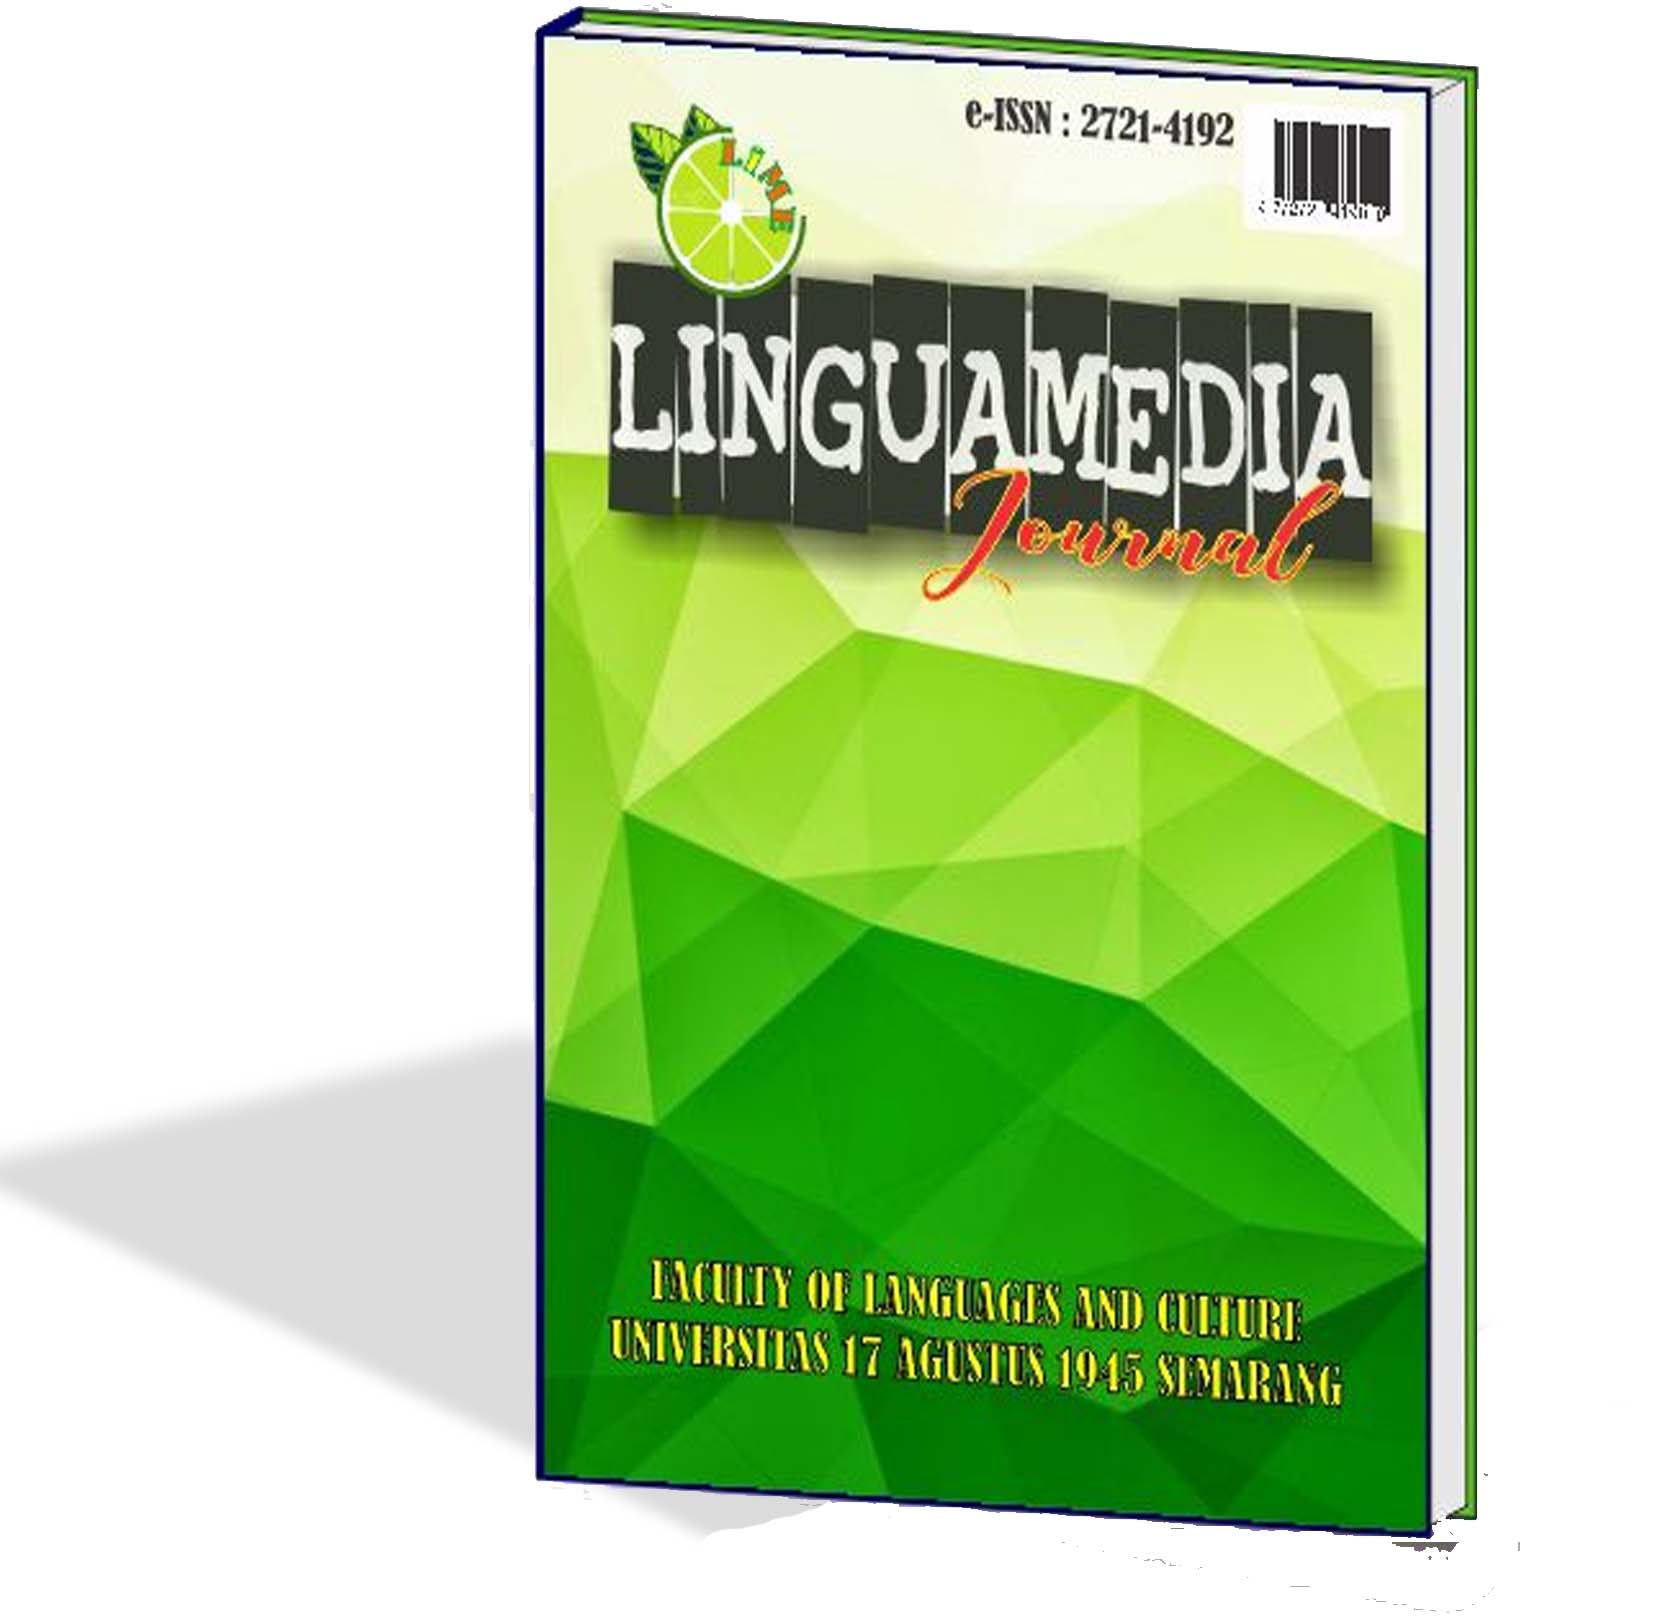 LINGUAMEDIA Journal